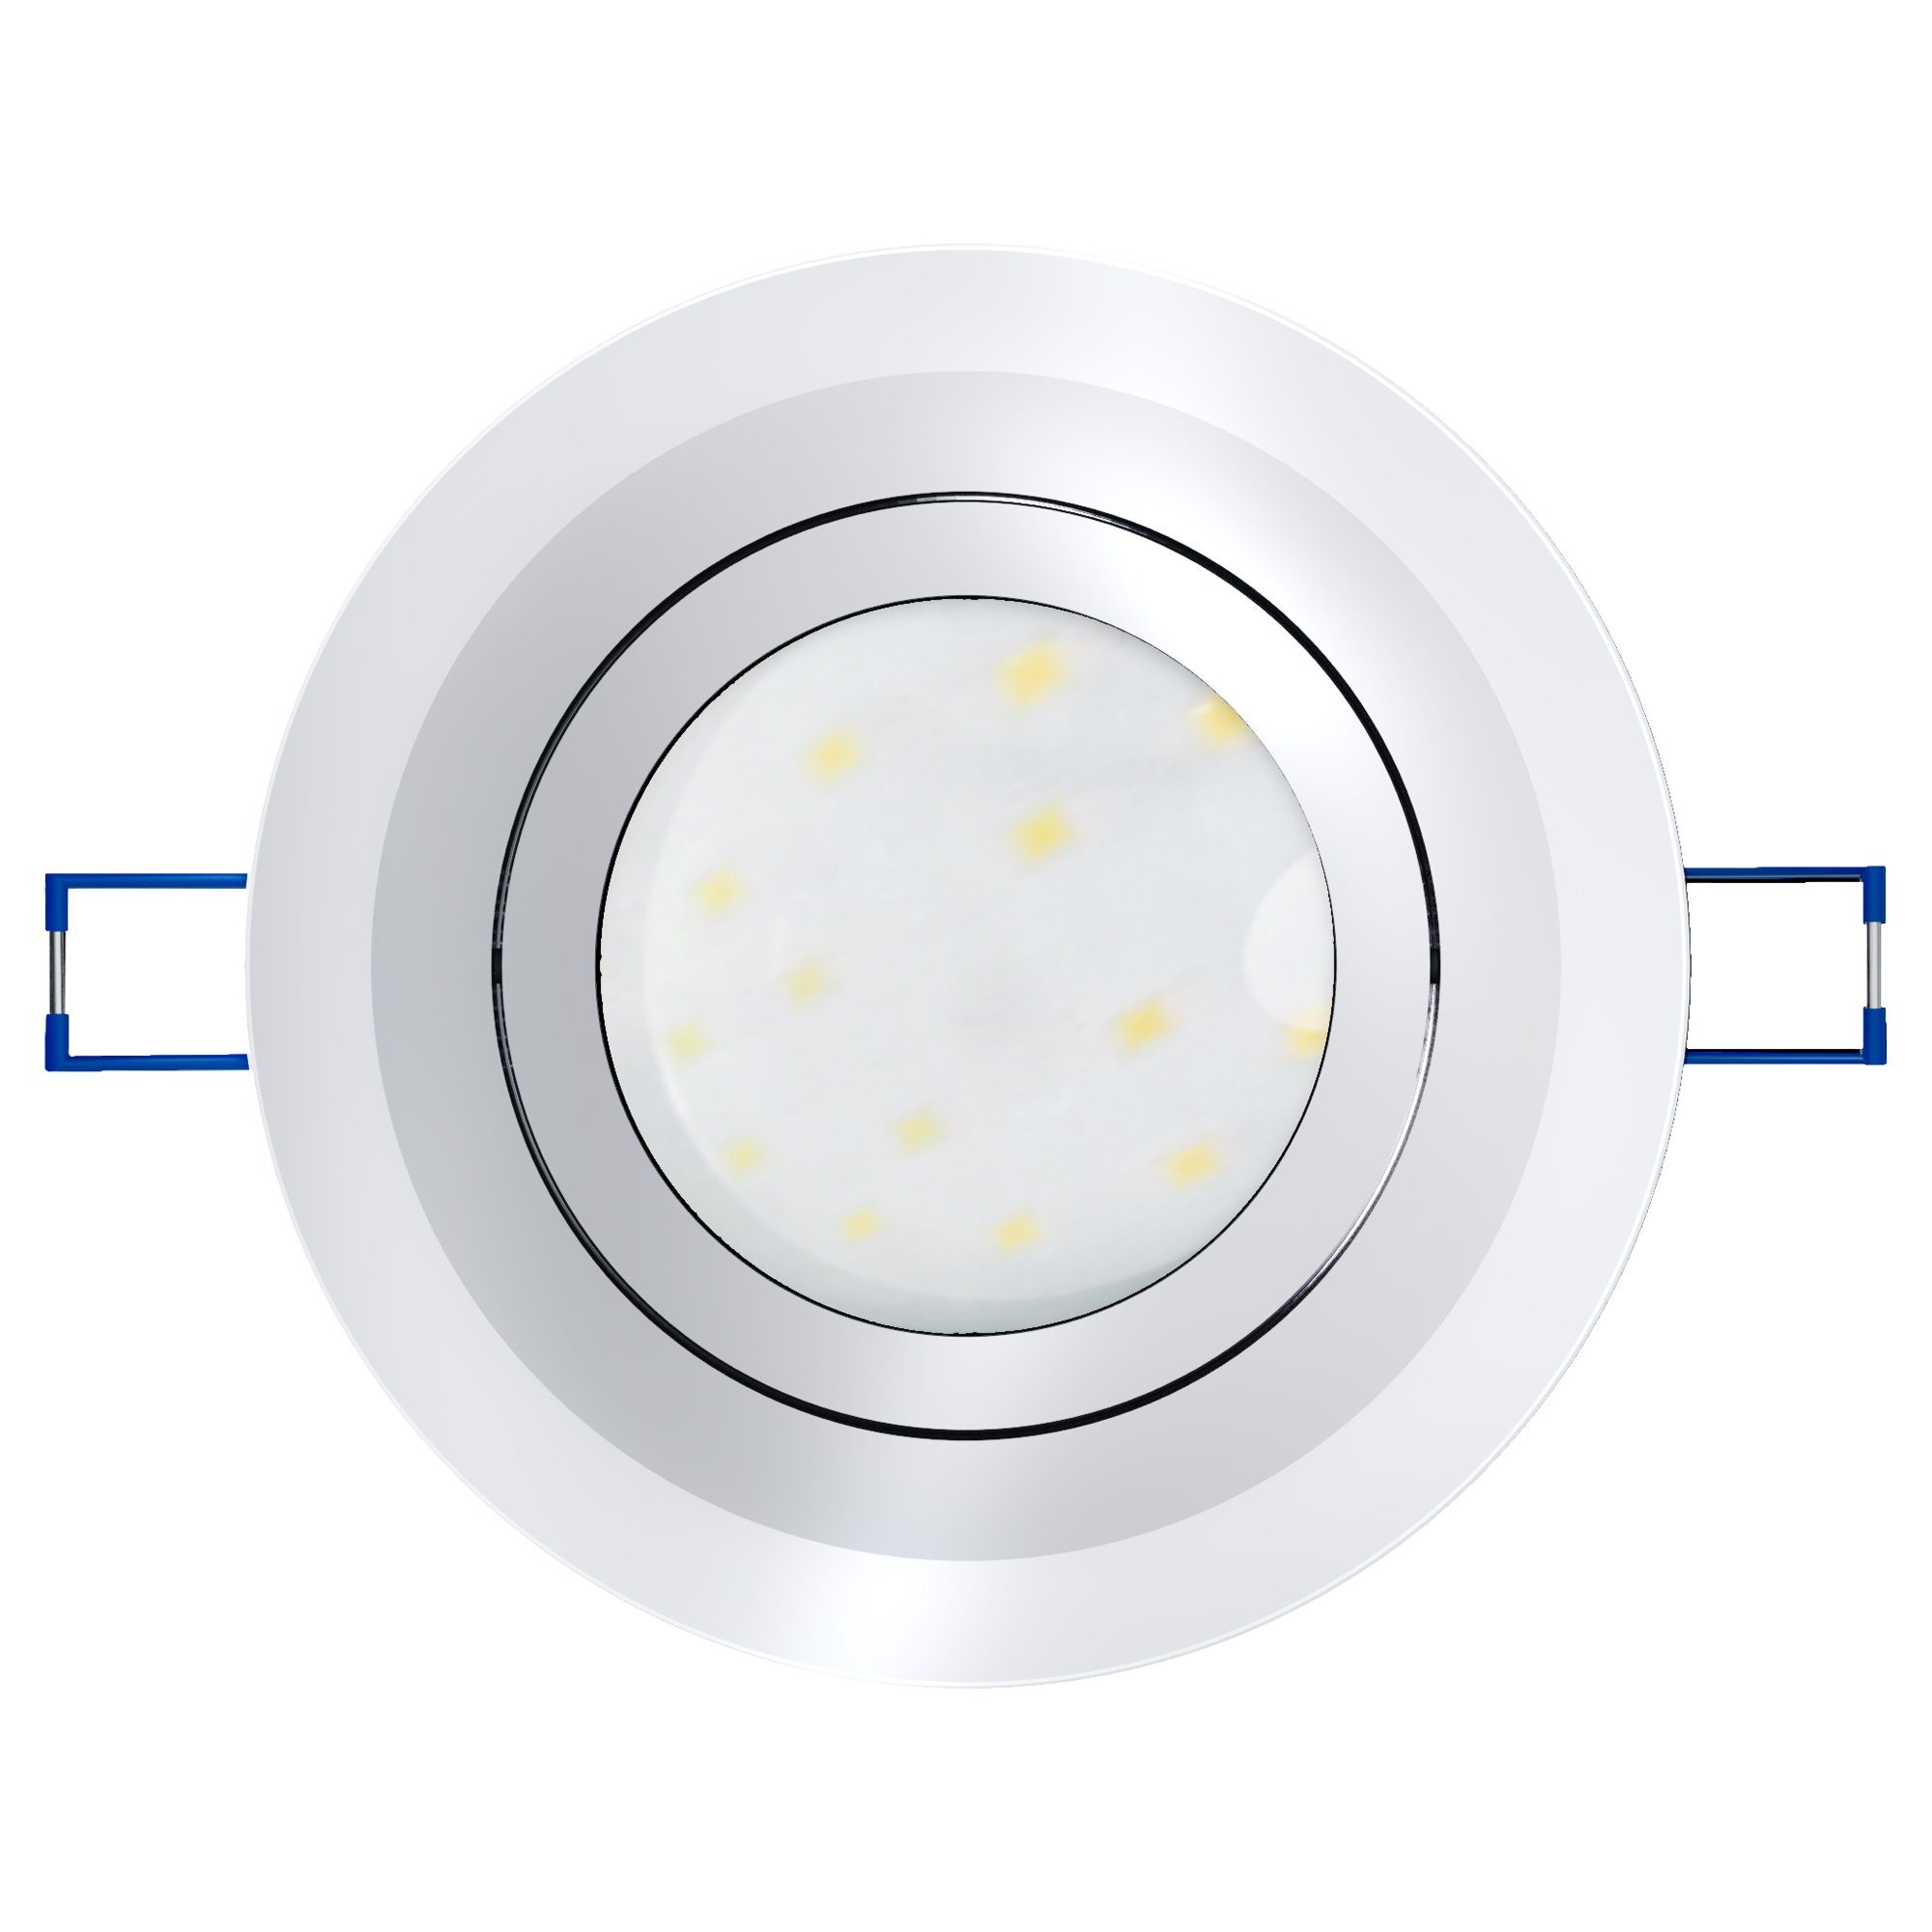 SSC-LUXon LED Einbaustrahler Modul Einbauspot Flacher mit rund Glas Neutralweiß schwenkbar LED neutral, klar LED